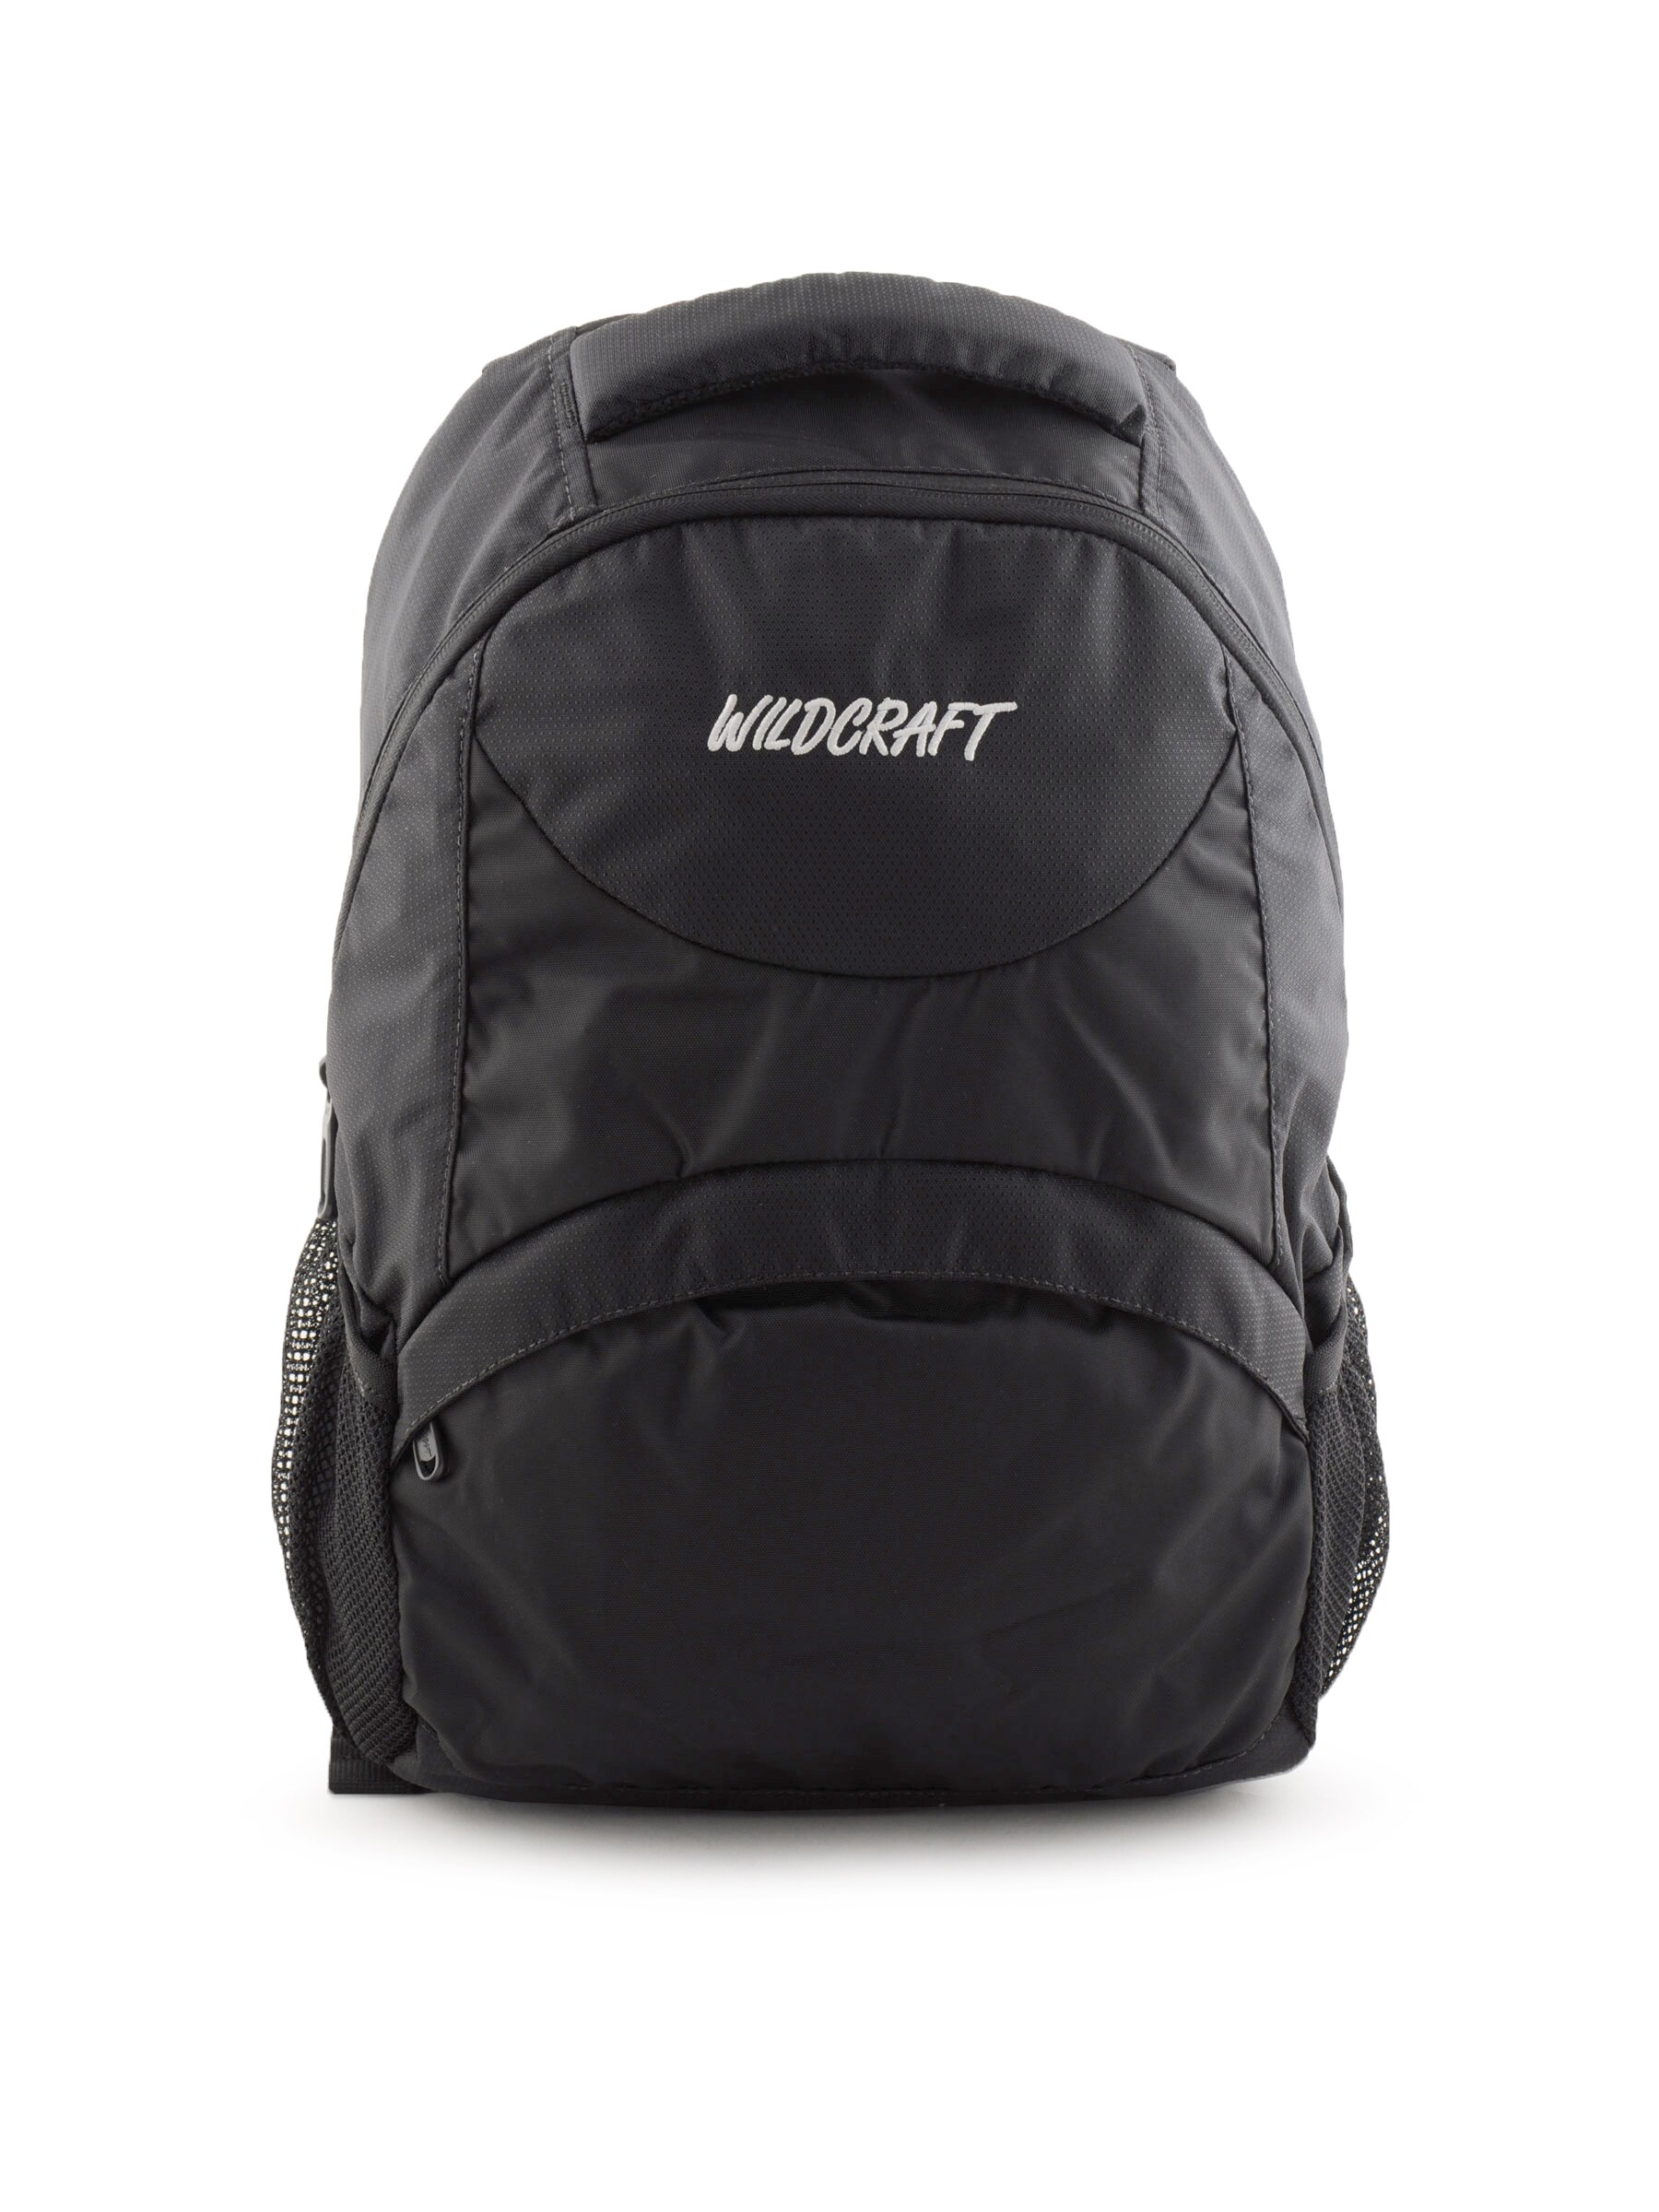 Wildcraft Unisex Black Outdoor Backpack